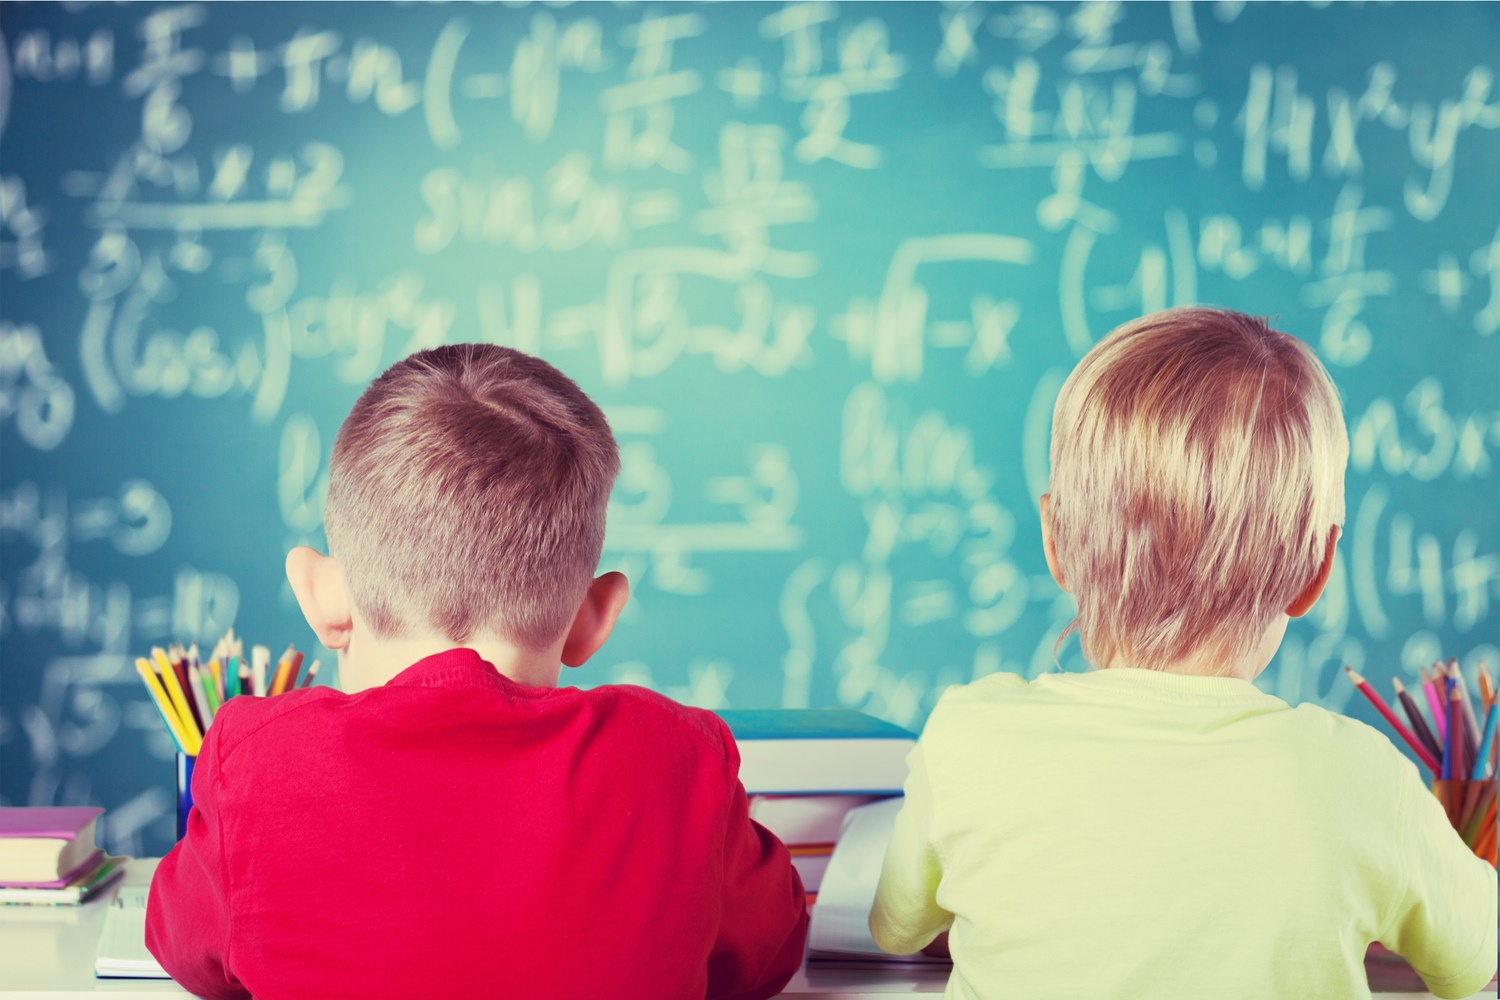 Schulkinder vor Tafel mit mathematischen Formeln